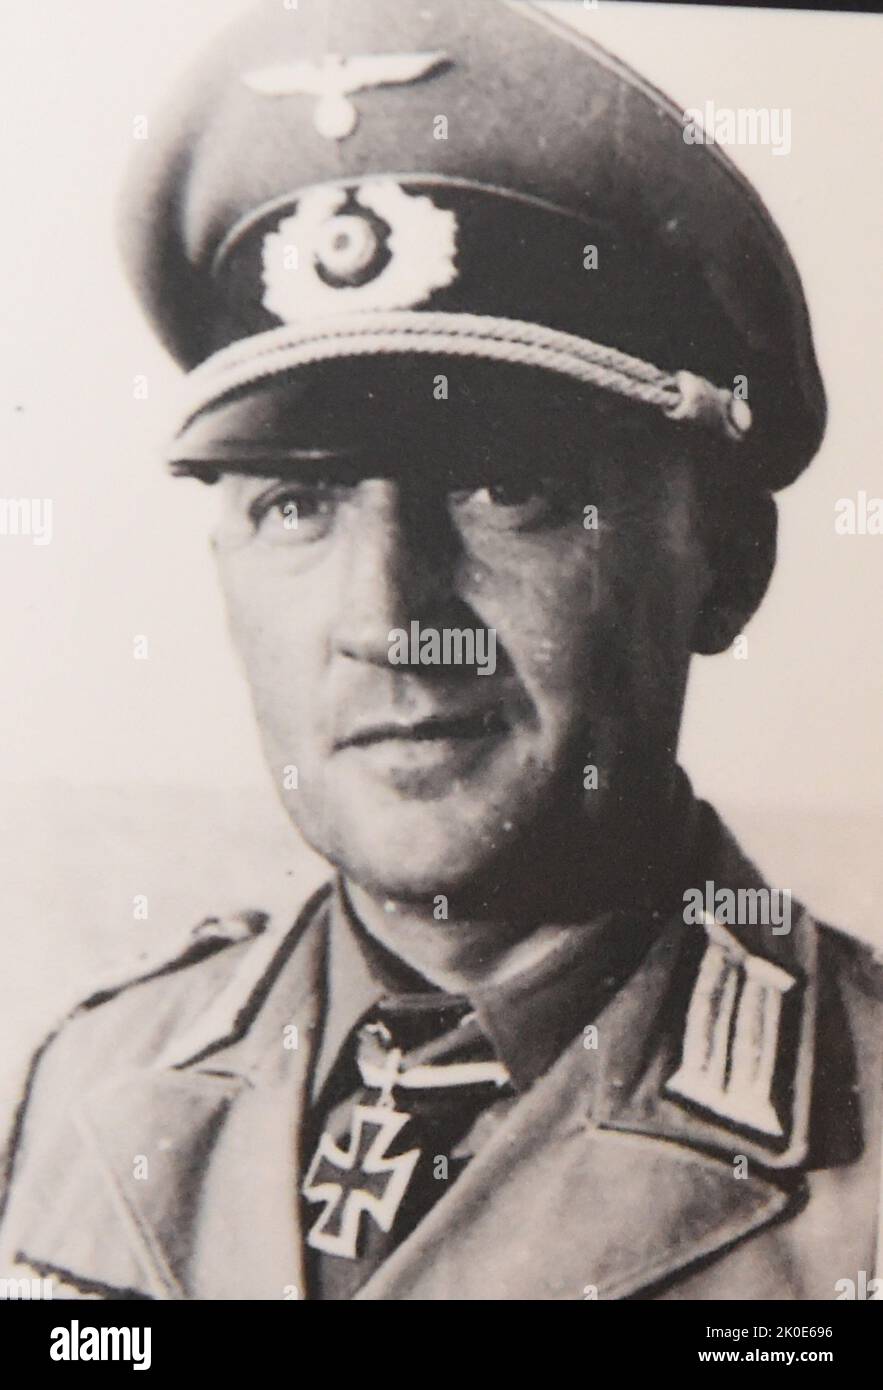 Maximilian Karl Otto von Herff (1893 - 6 septembre 1945) commandant SS allemand pendant l'ère nazie. Il a été chef du bureau principal du personnel de la SS de 1942 à 1945. Banque D'Images